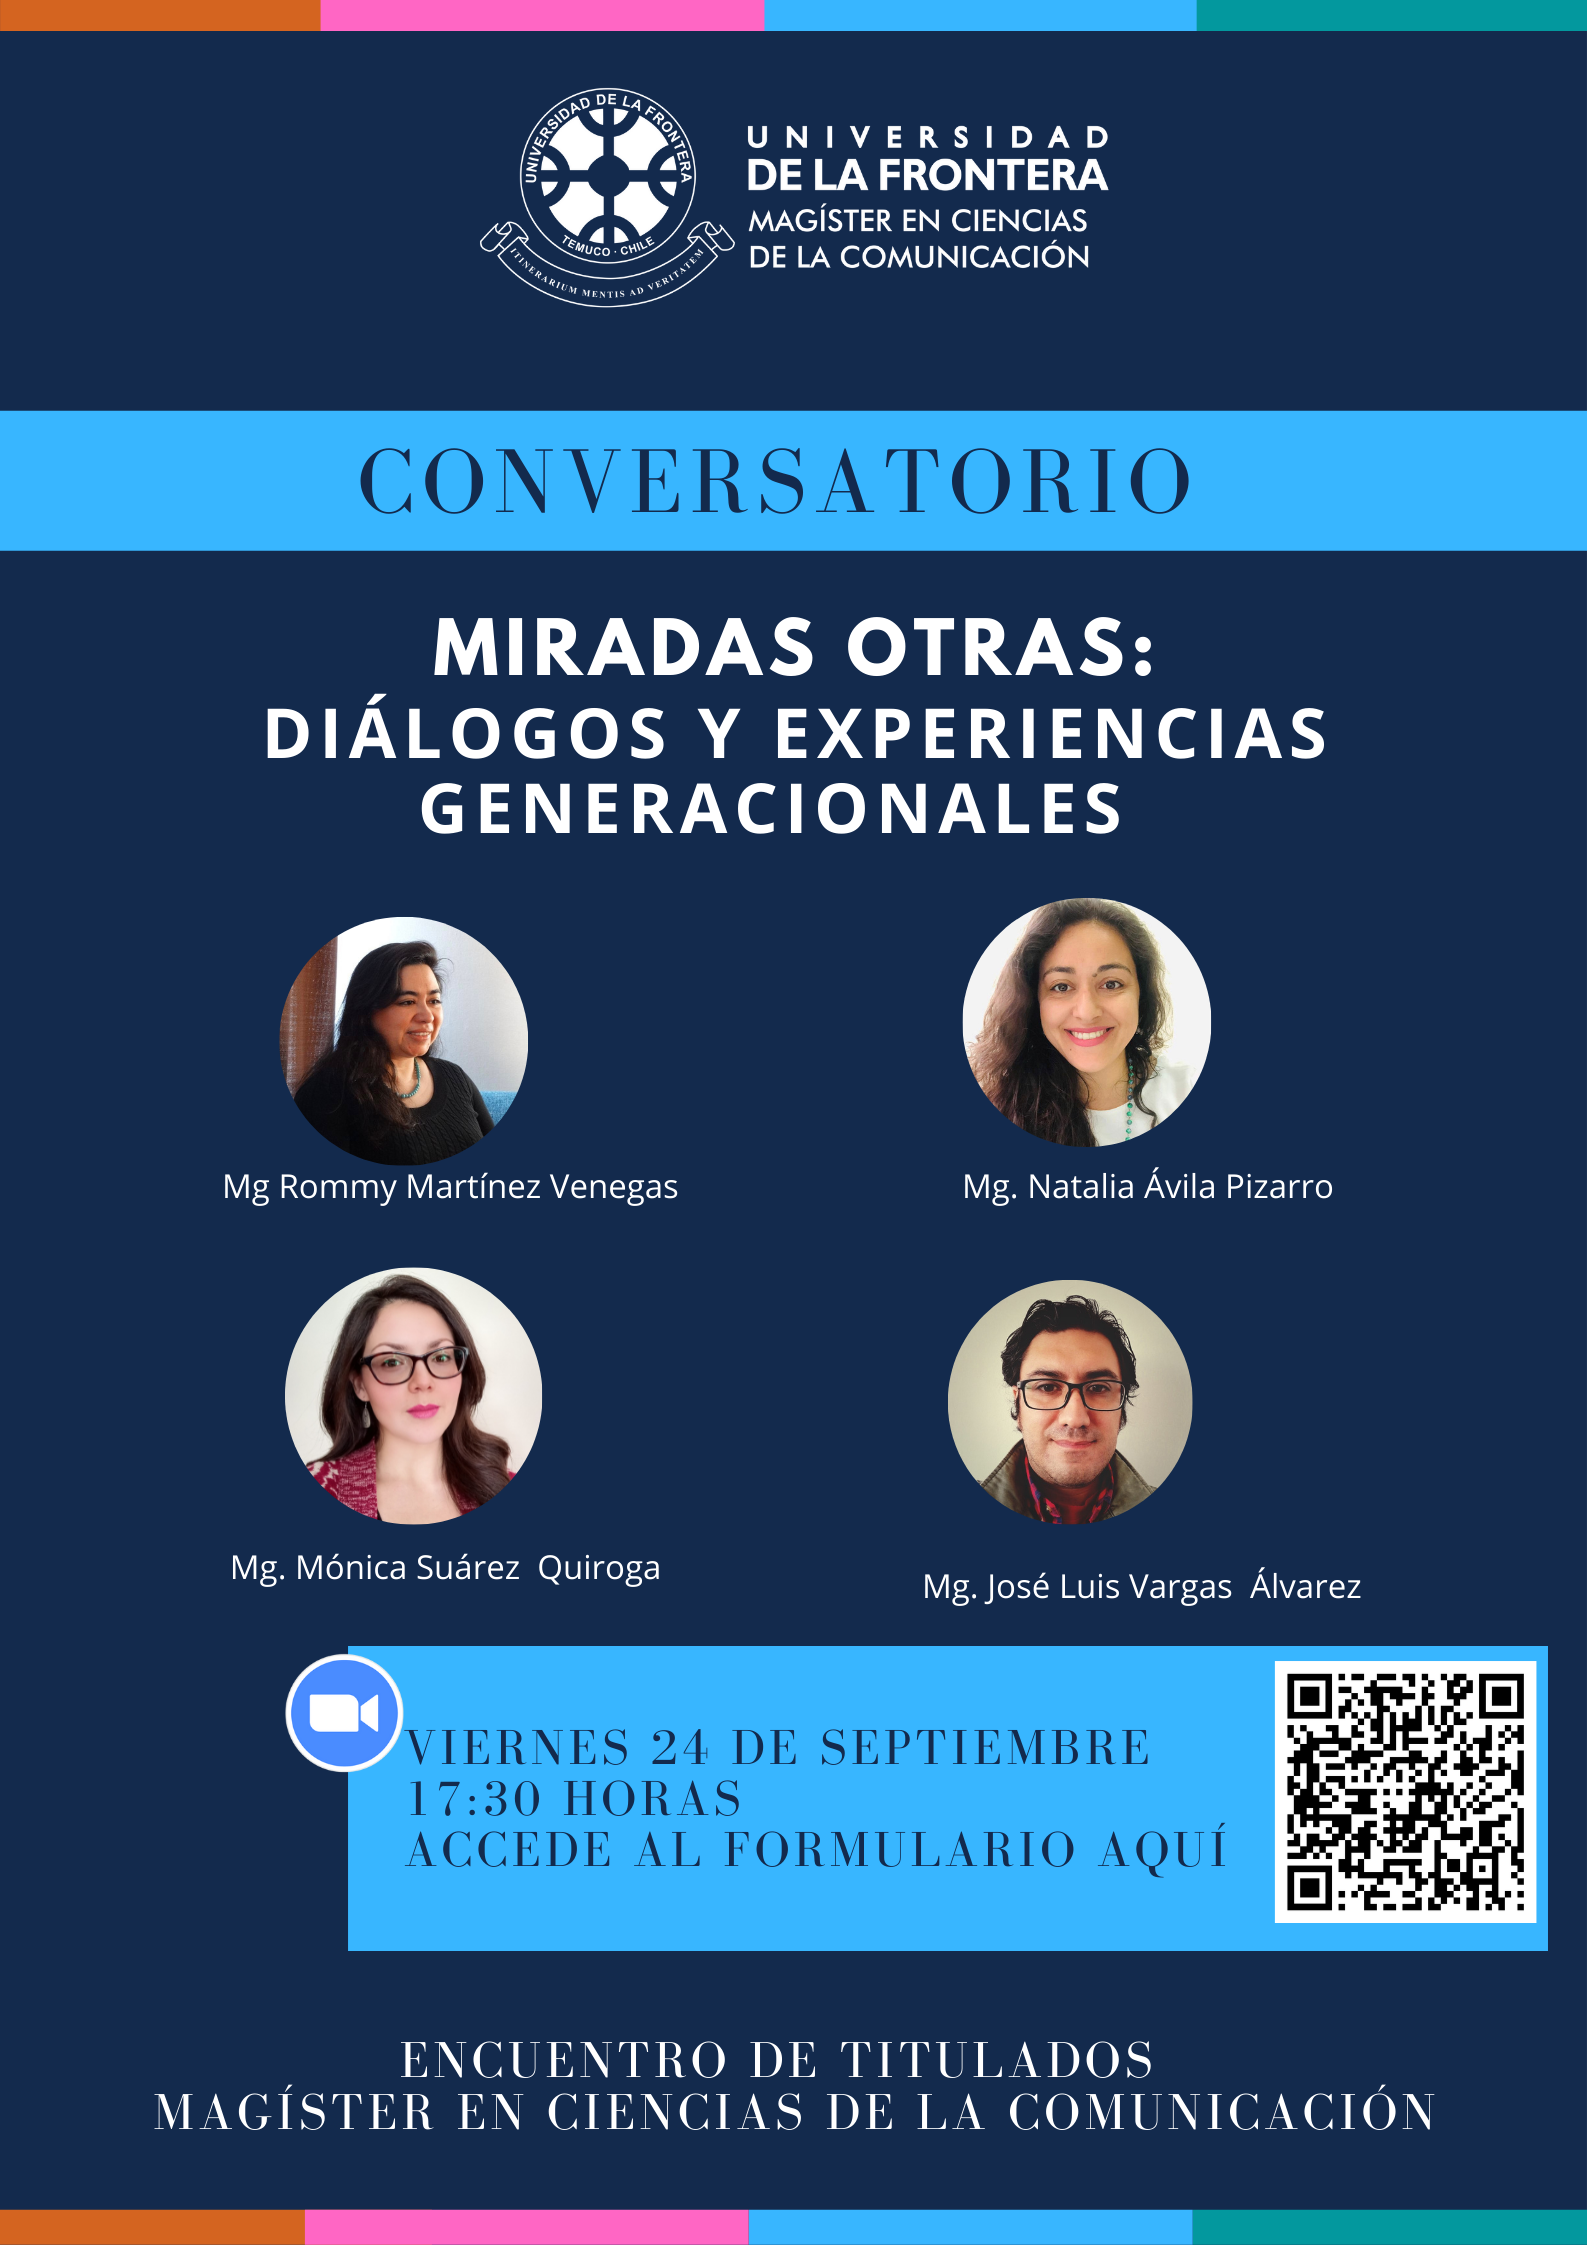 Conversatorio: Miradas otras: diálogos y experiencias generacionales, orgqnizado por el Magíster en Ciencias de la Comunicación UFRO